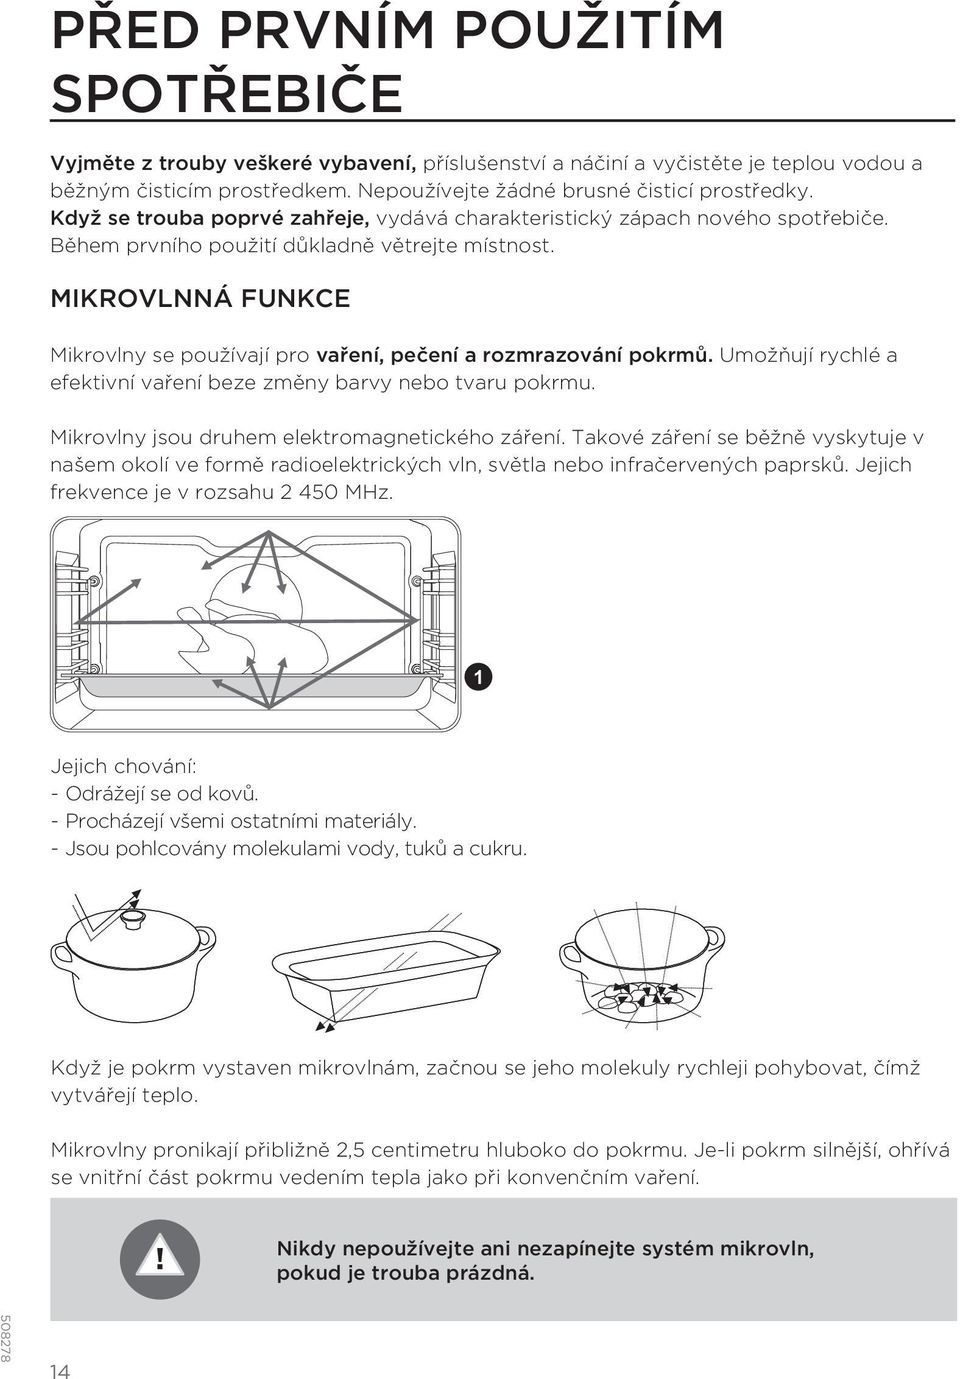 MIKROVLNNÁ FUNKCE Mikrovlny se používají pro vaření, pečení a rozmrazování pokrmů. Umožňují rychlé a efektivní vaření beze změny barvy nebo tvaru pokrmu.